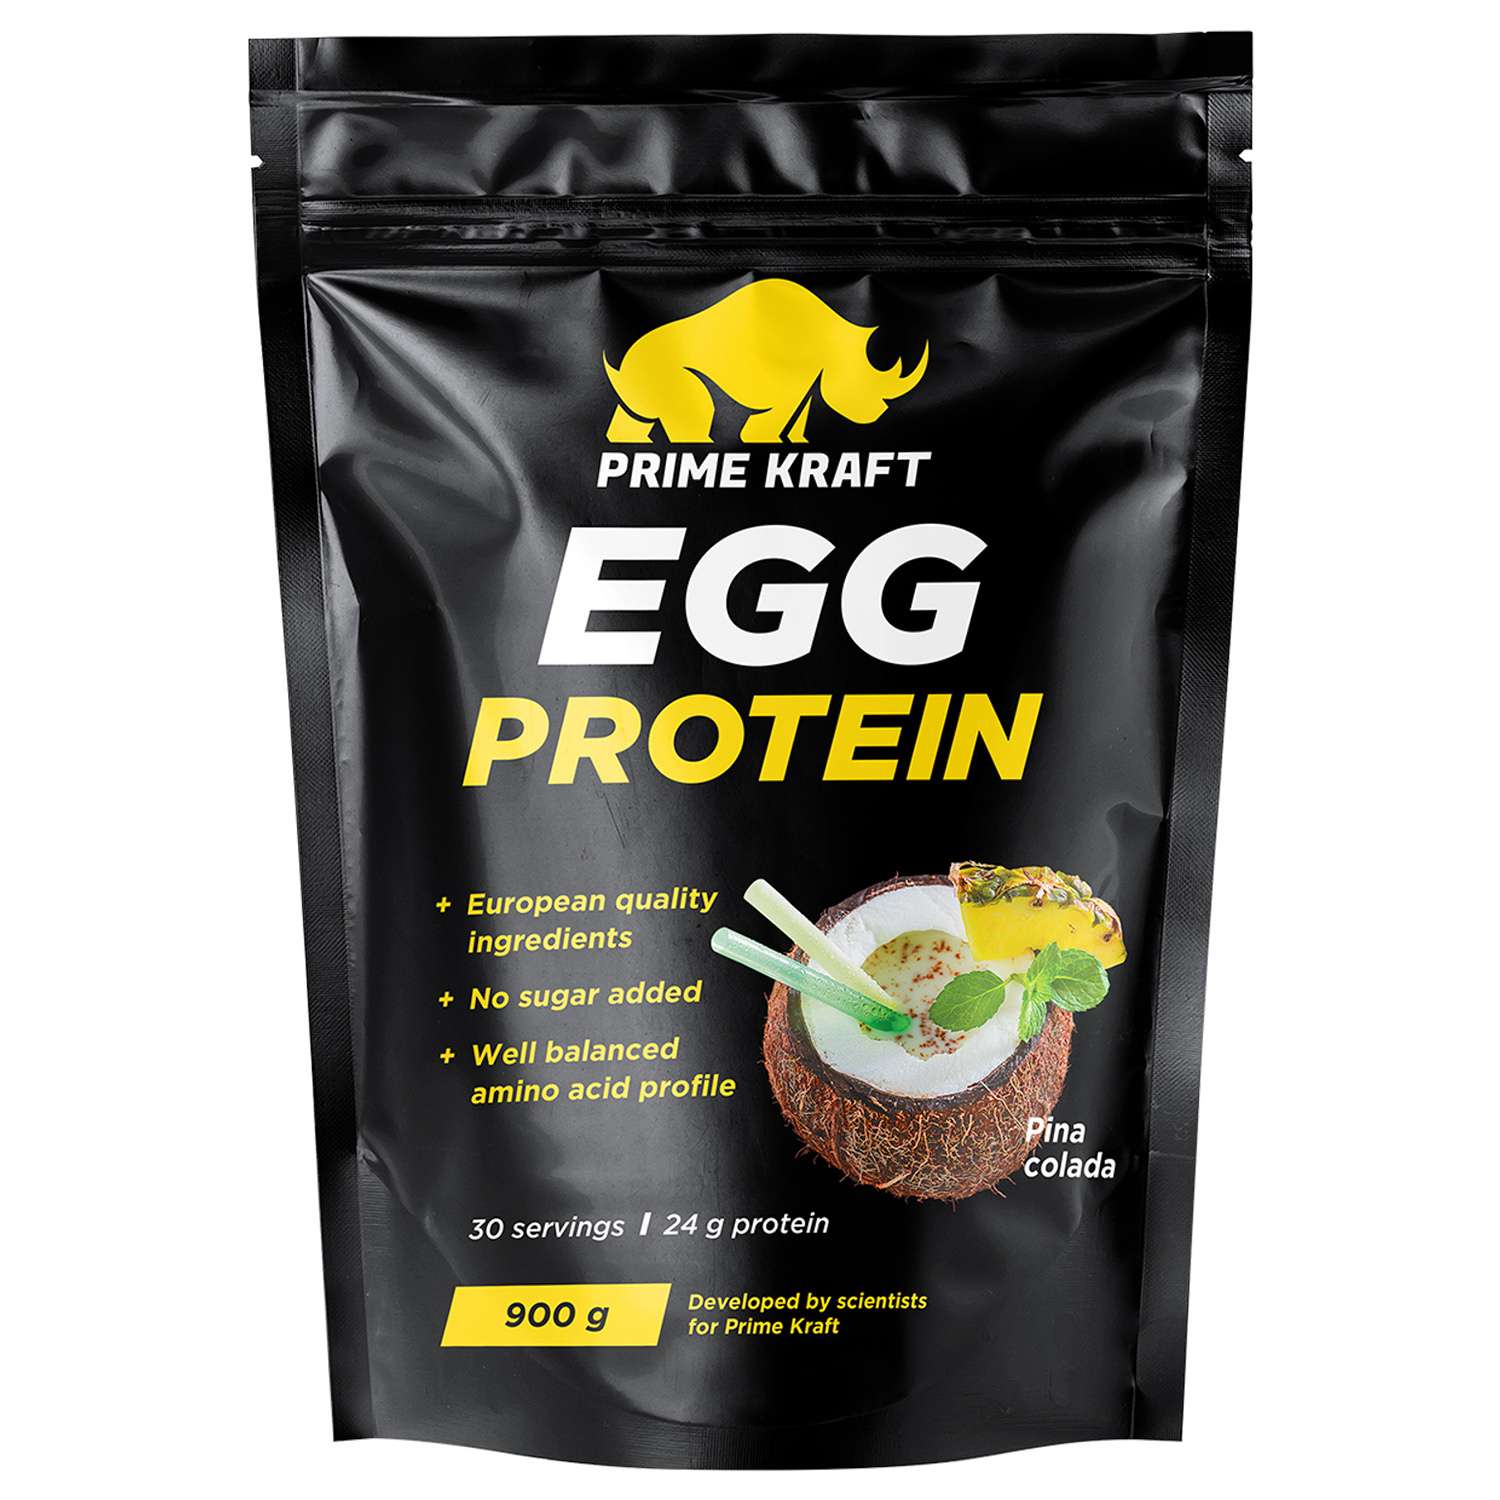 Протеин яичный Prime Kraft Egg Protein пина колада 900г - фото 1